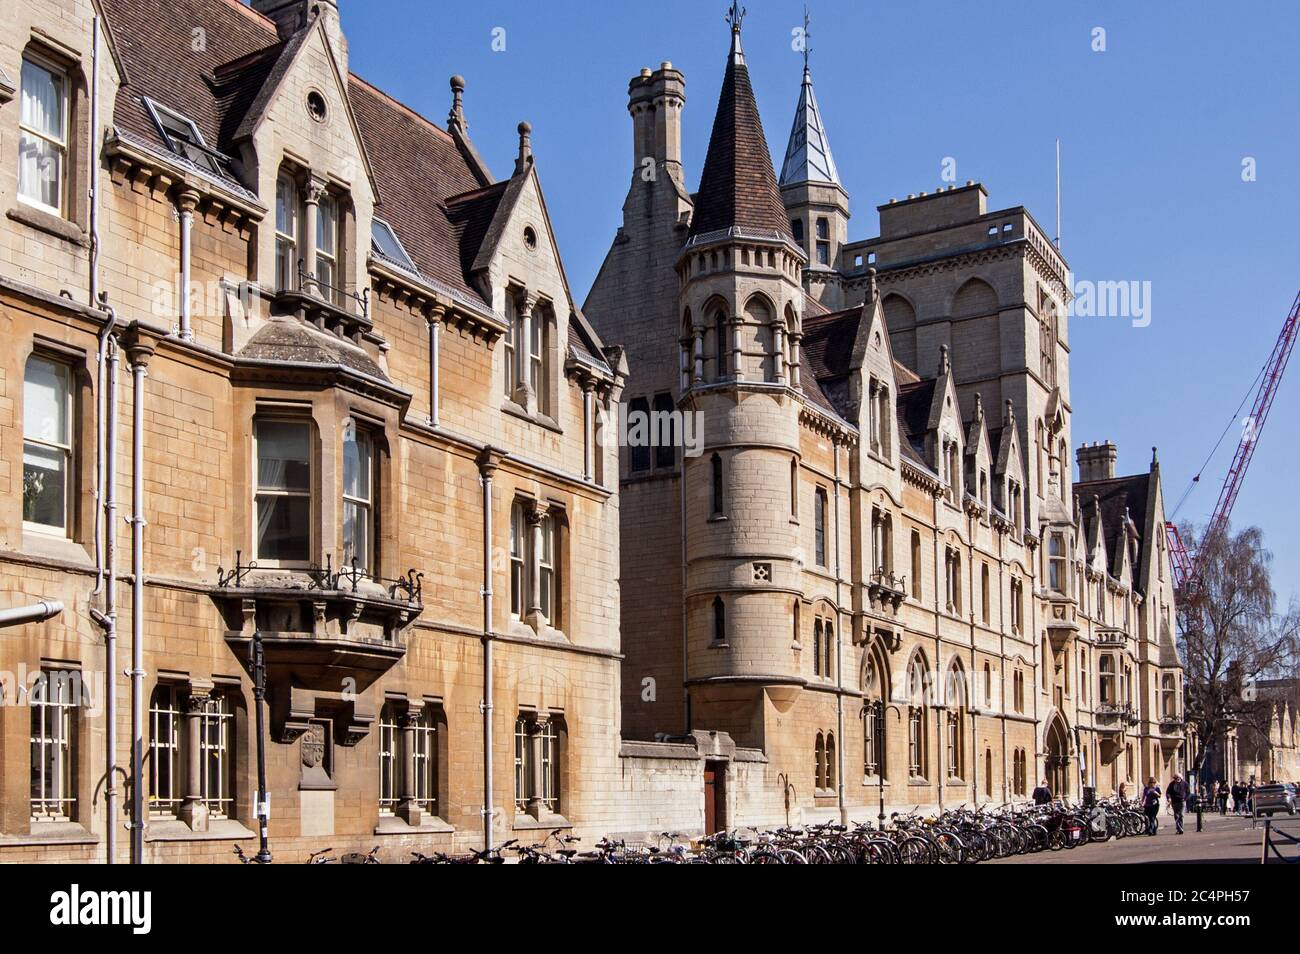 Oxford, UK - 26 marzo 2012: Vista da Broad Street del Balliol College nel centro di Oxford, Regno Unito. Foto Stock